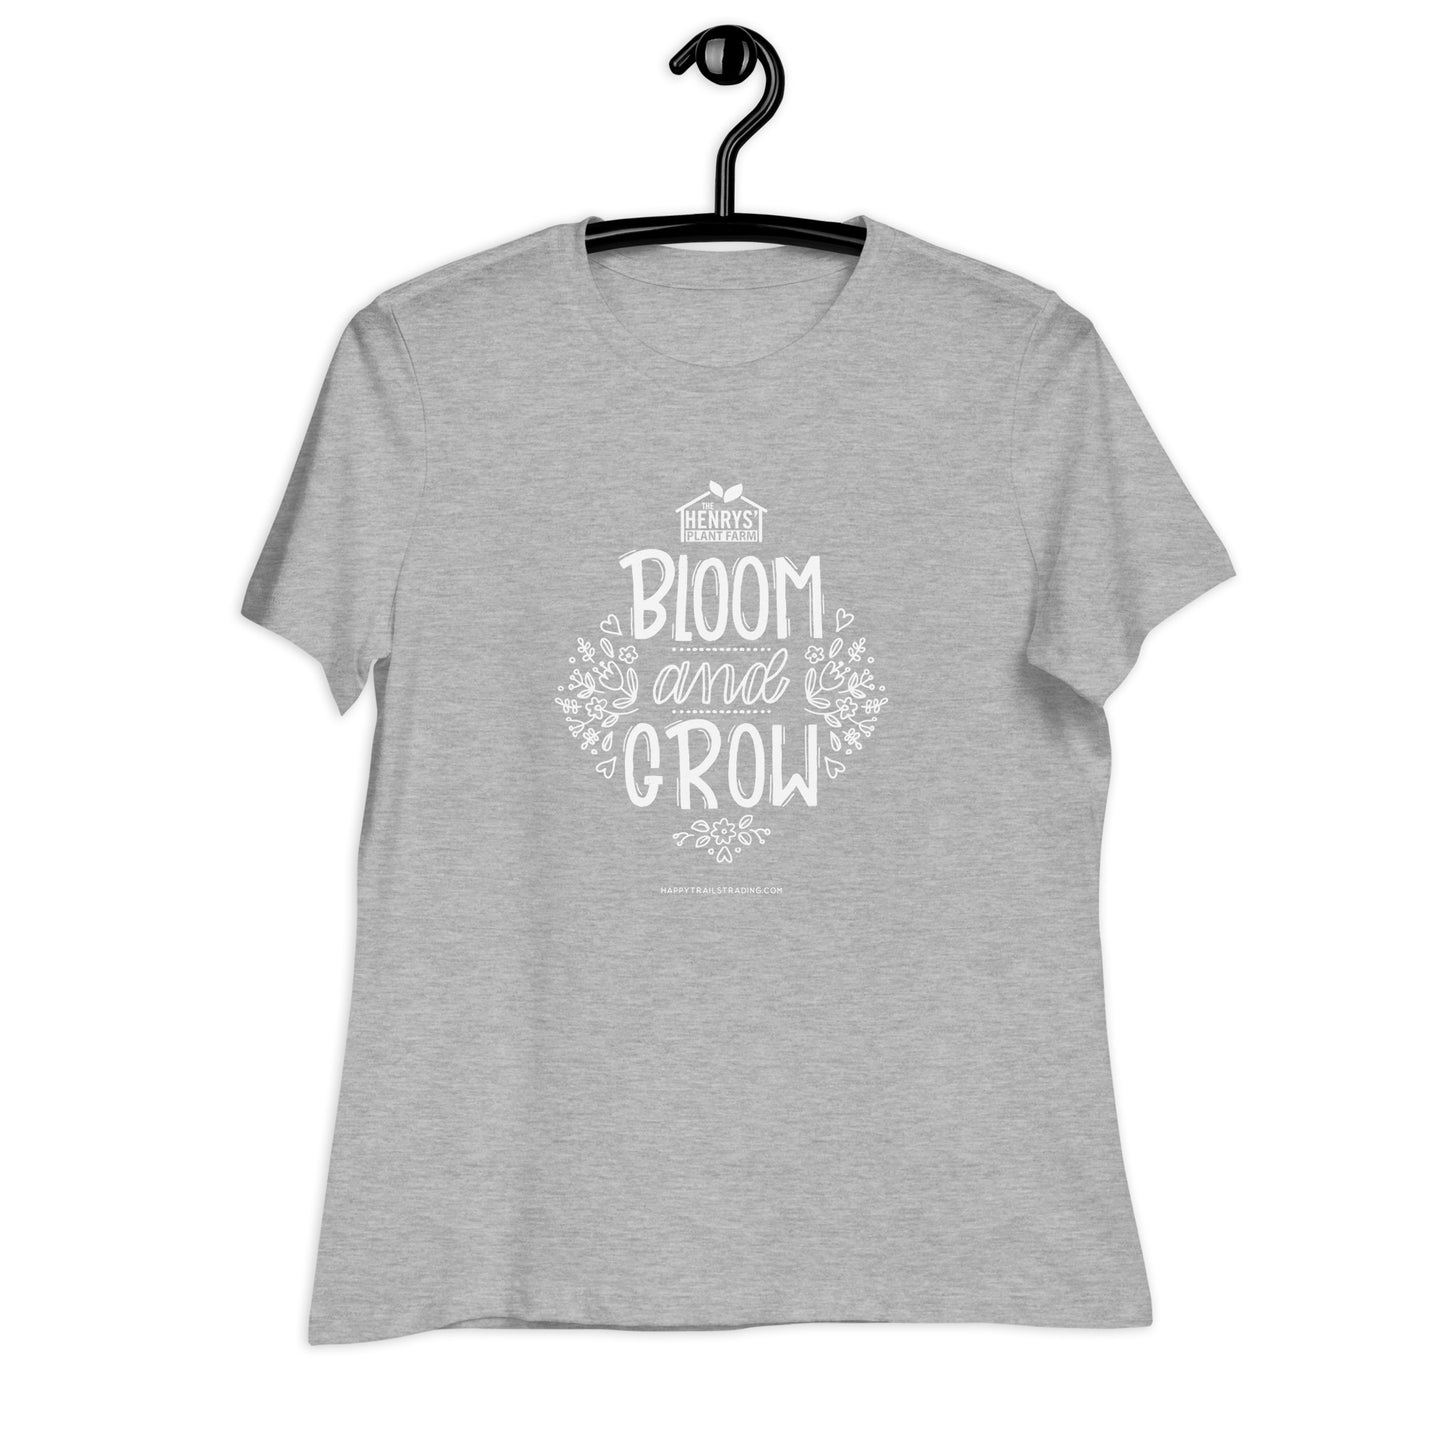 Bloom & Grow - Women's Relaxed T-Shirt